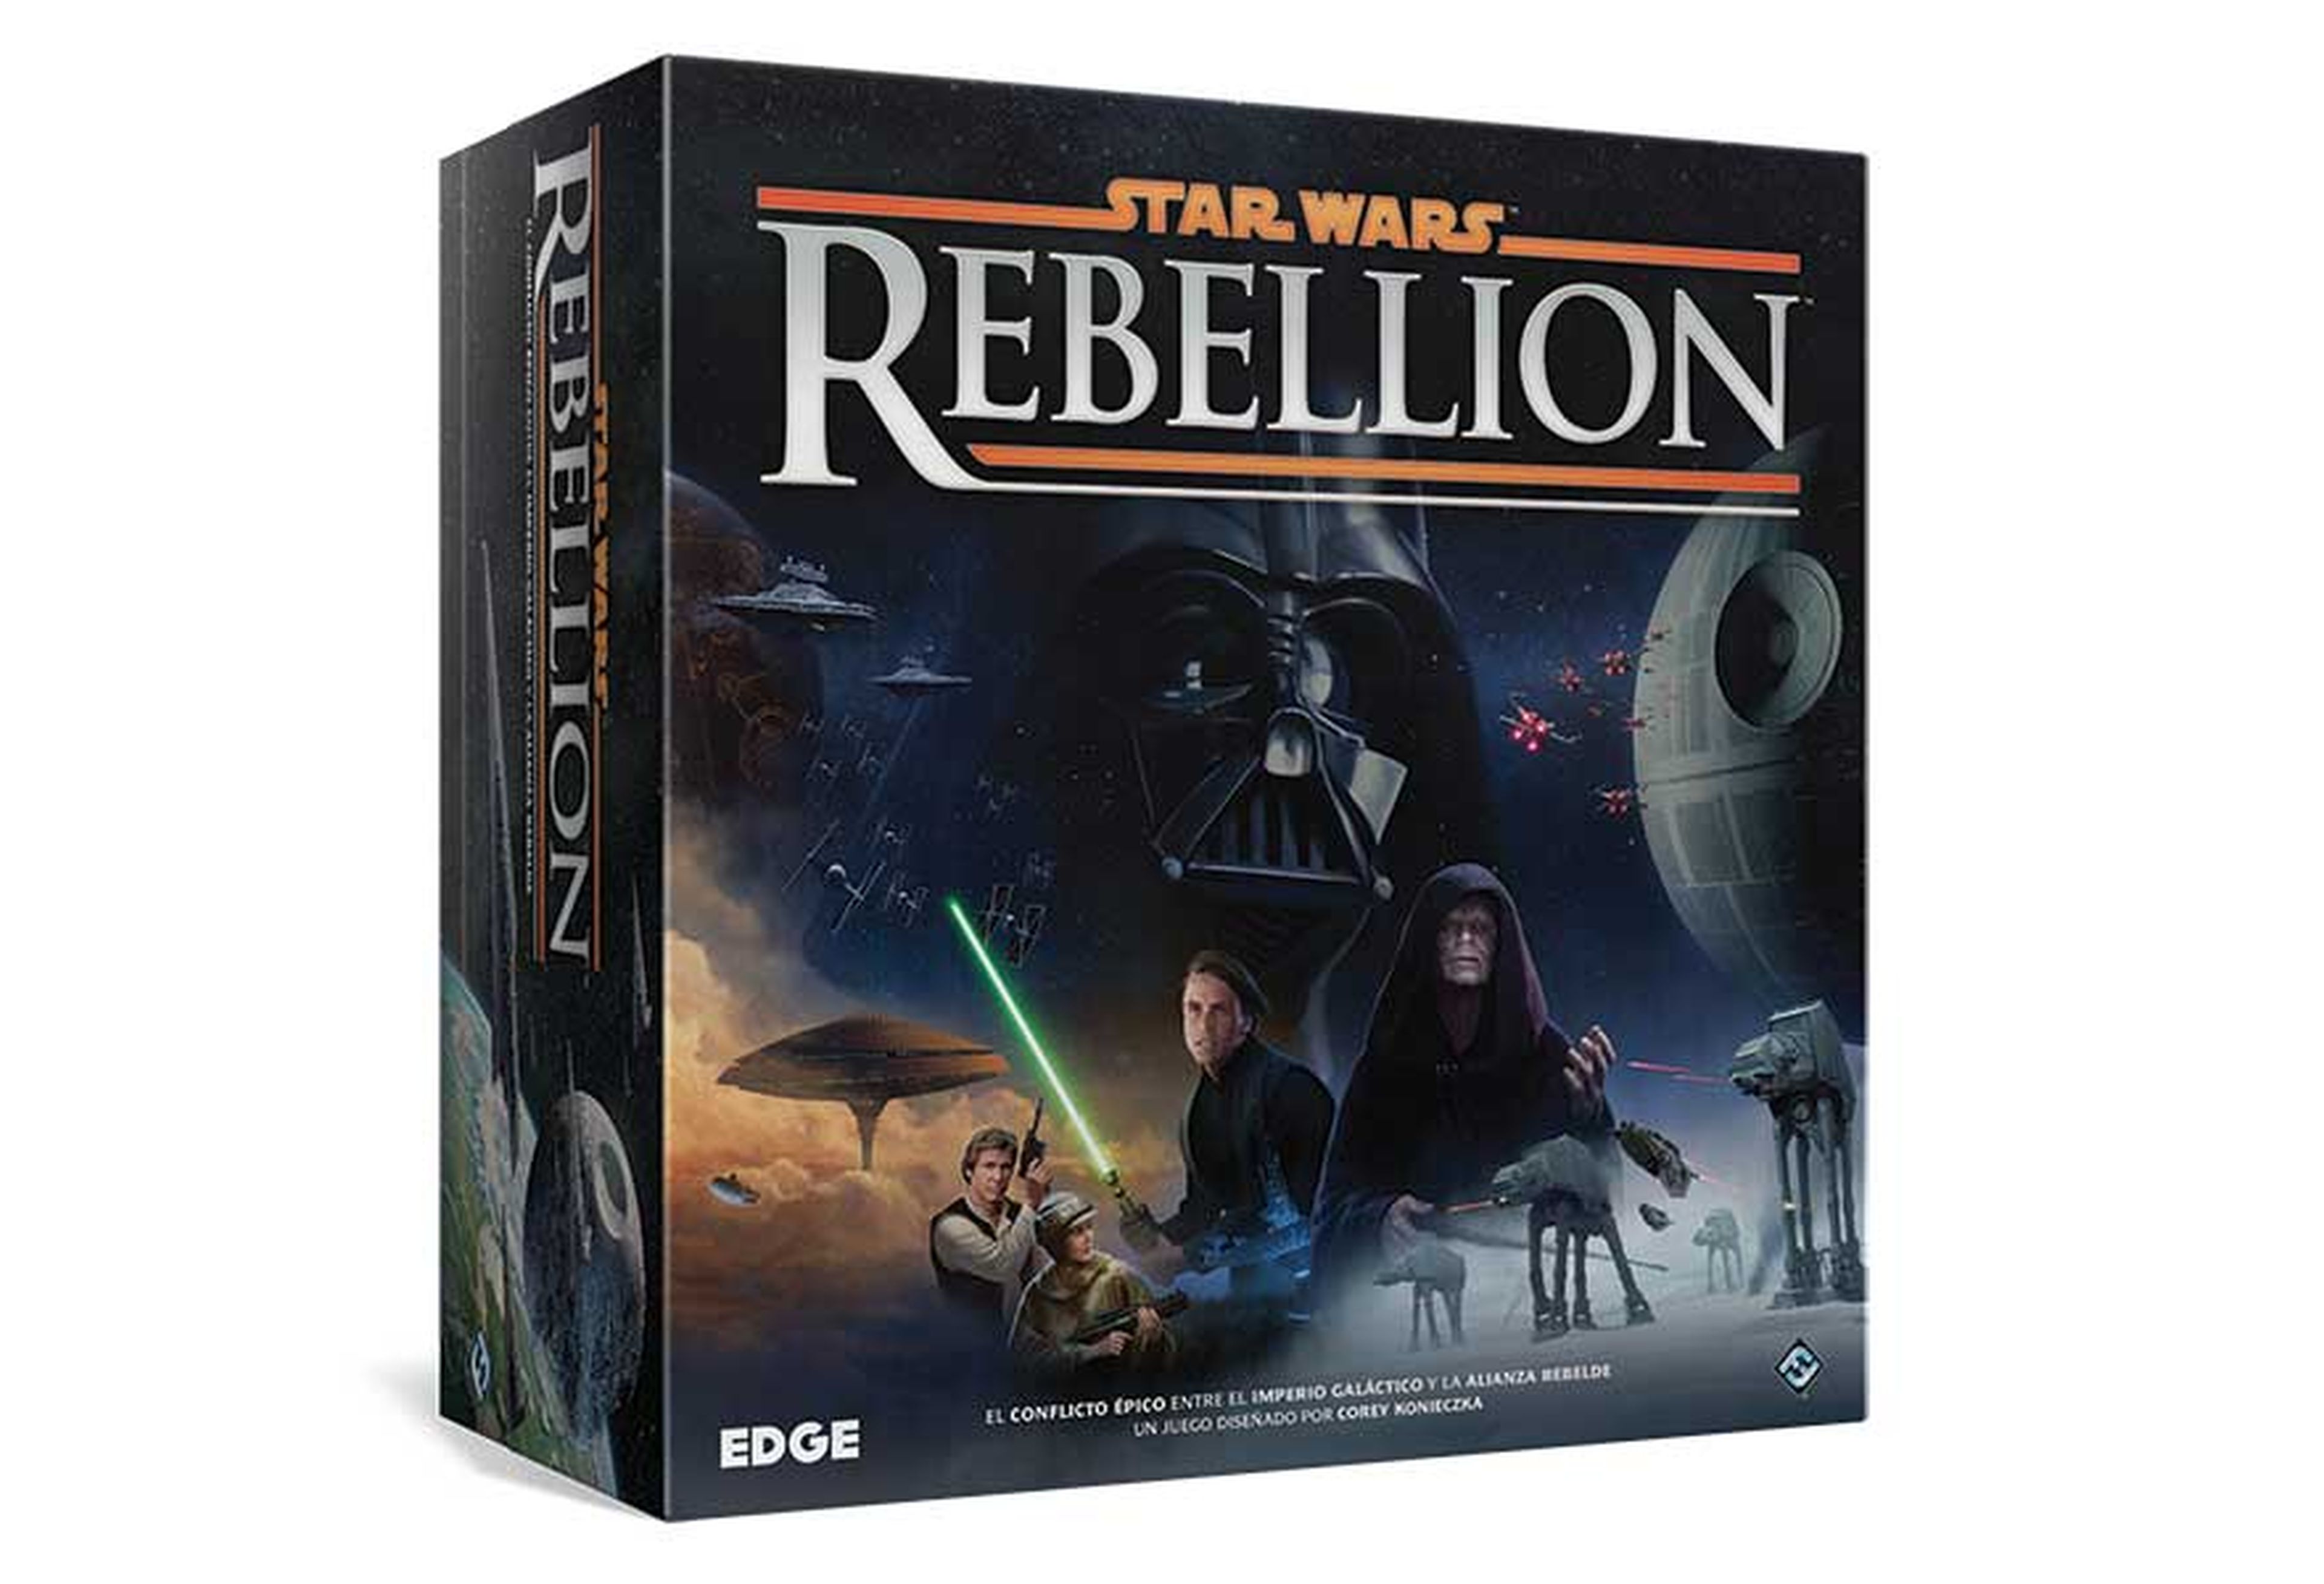 9. Star Wars Rebellion